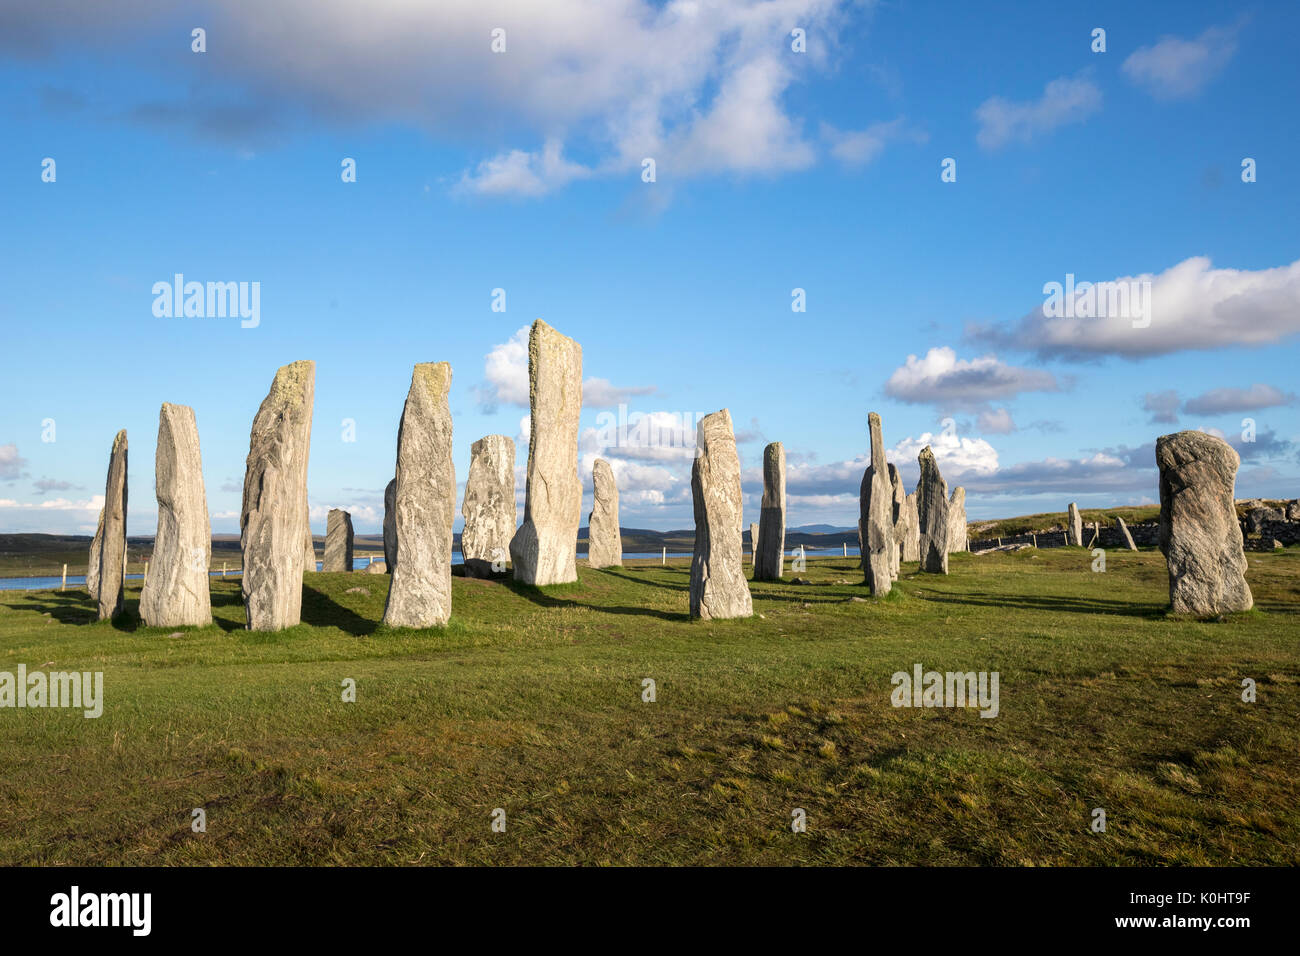 Callanish Standing Stones, pierres placées dans un motif cruciforme avec un cercle central en pierre, Callanish, Ecosse, Royaume-Uni Banque D'Images